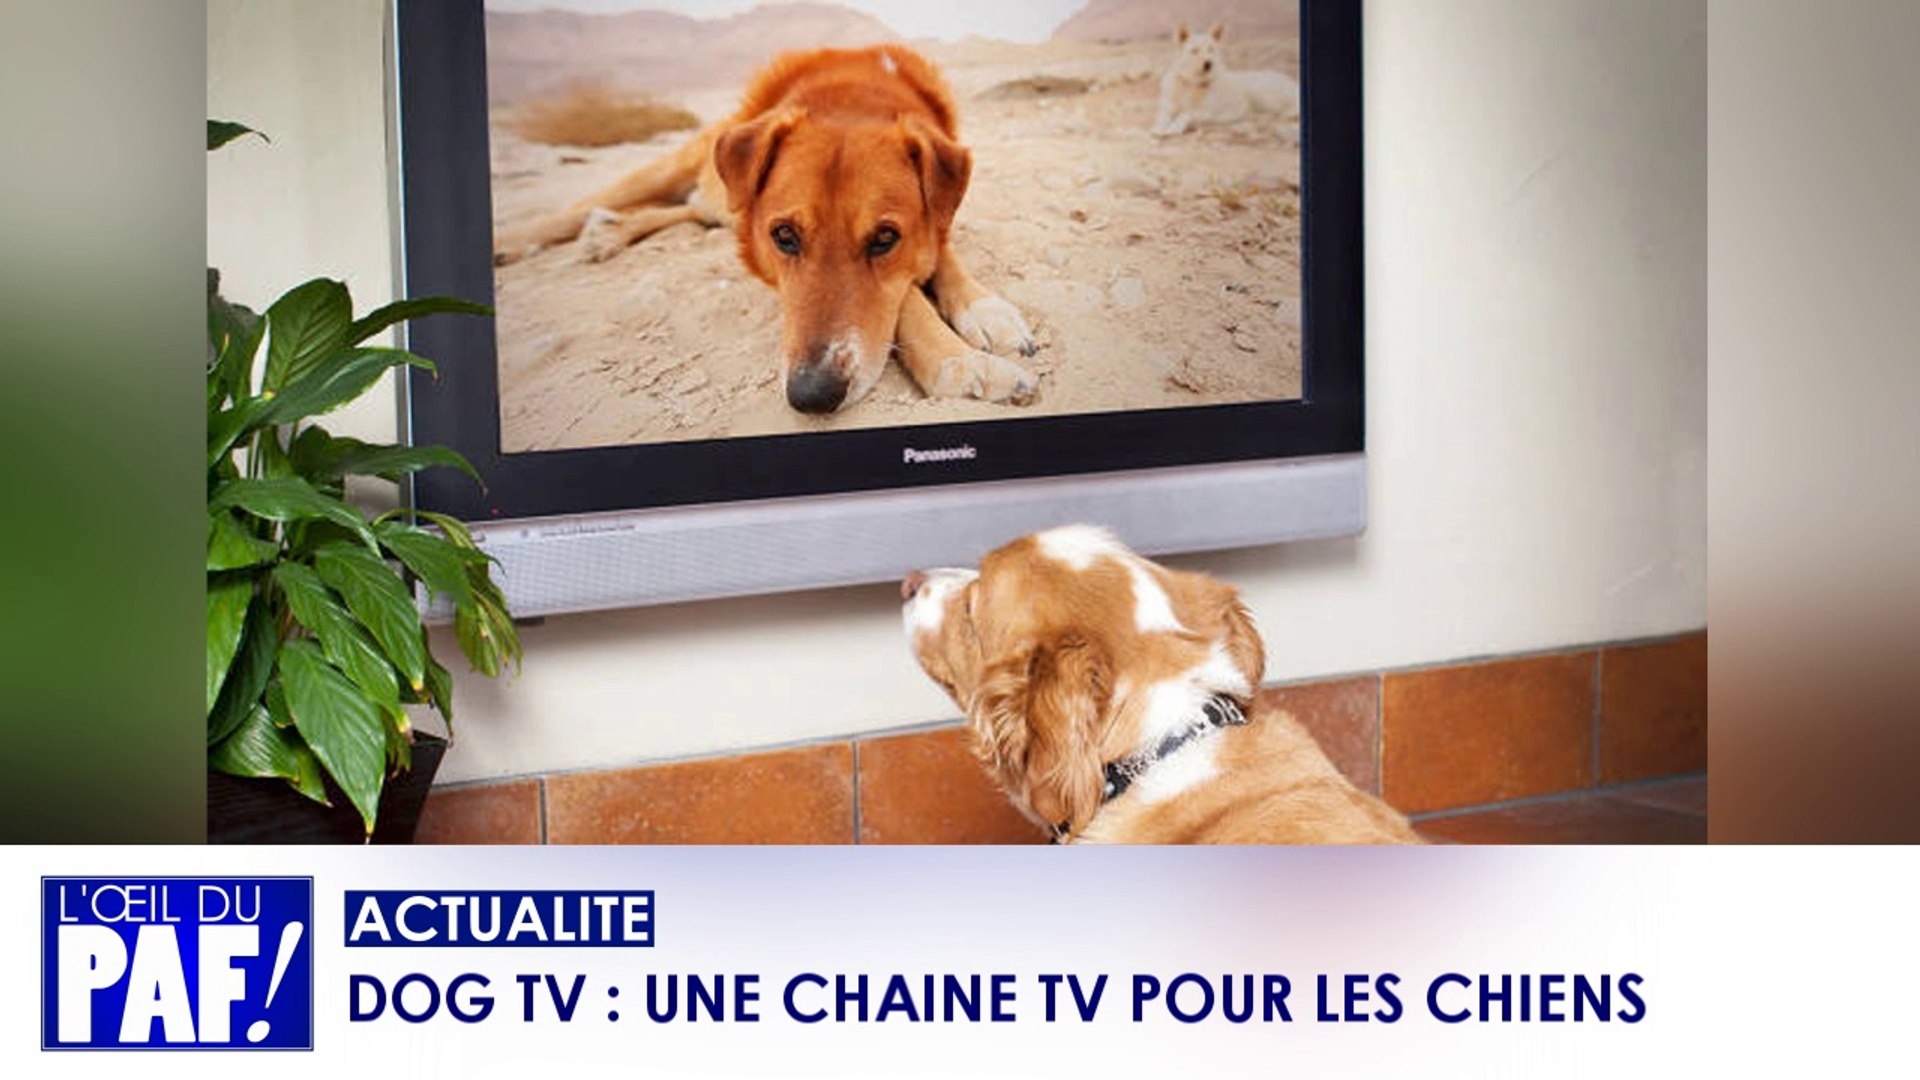 DOG TV : UNE CHAINE TV POUR LES CHIENS - Vidéo Dailymotion